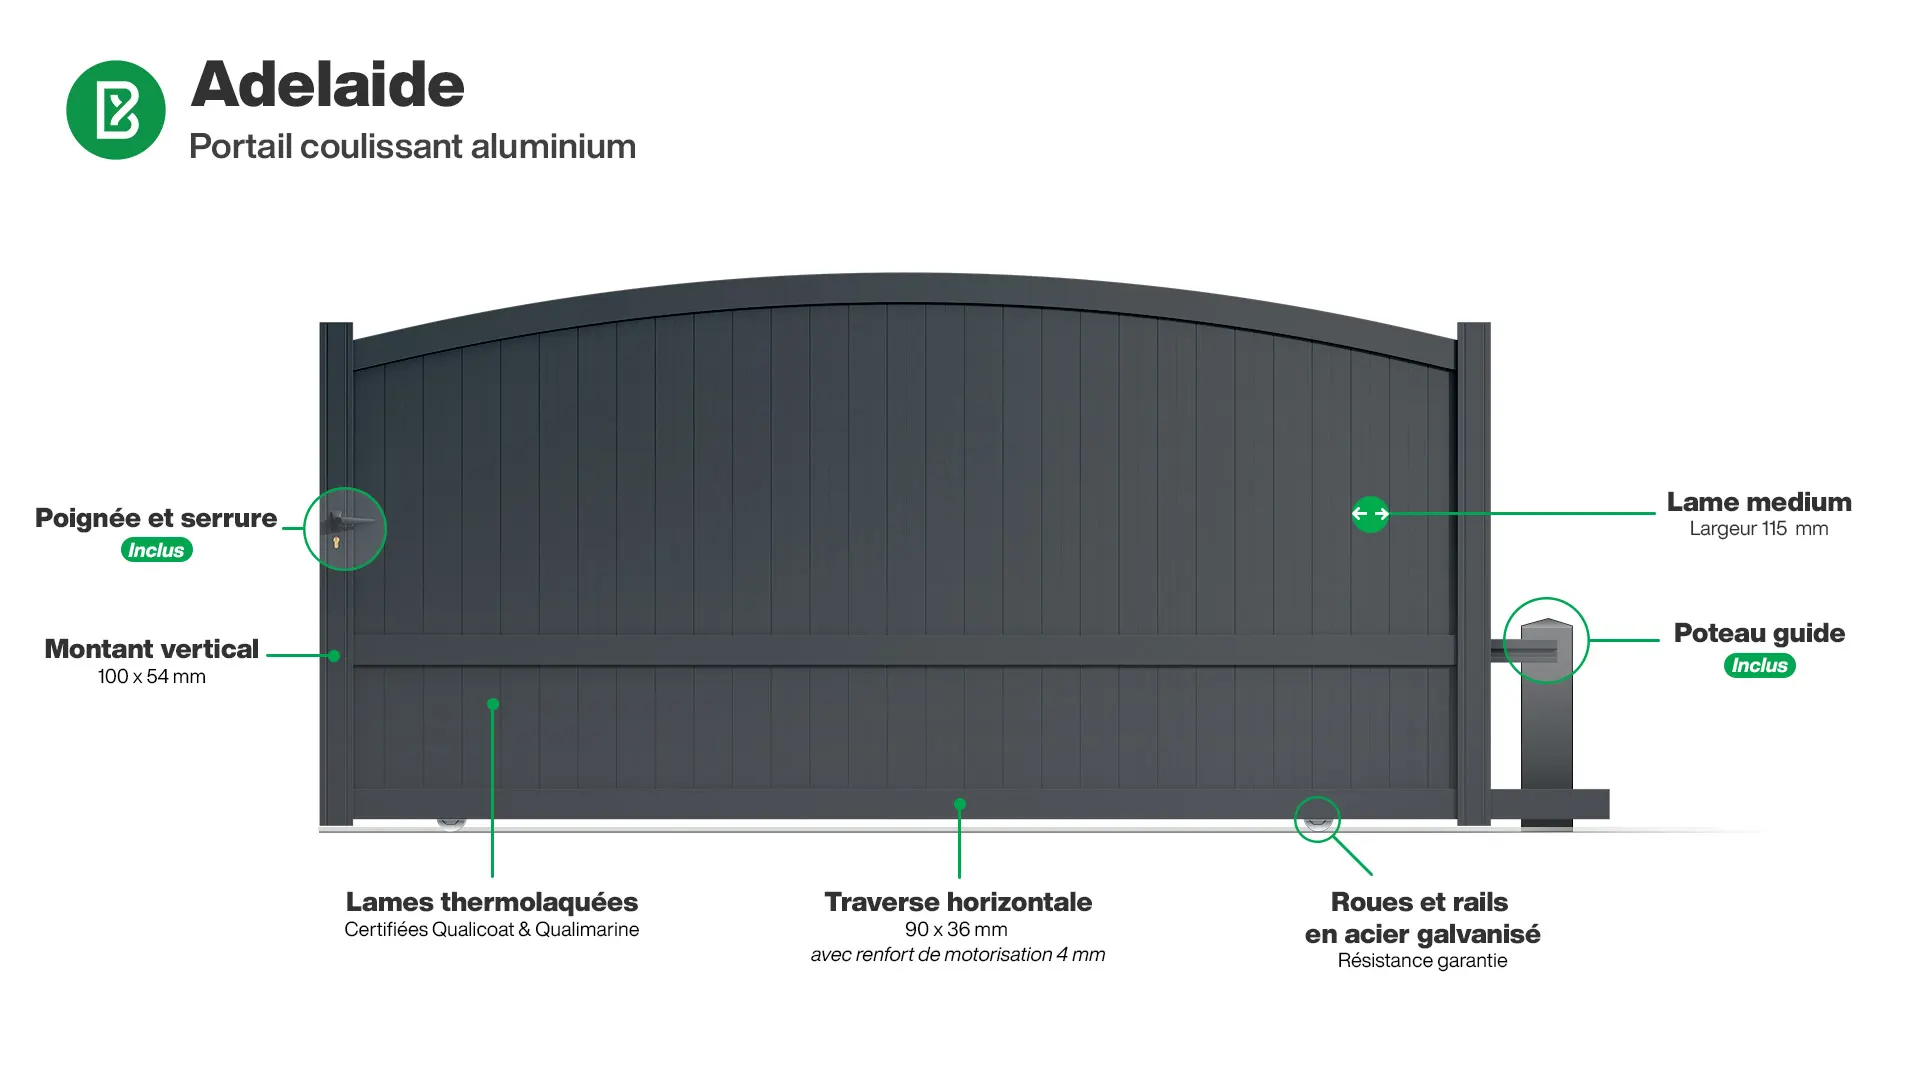 Portail : Infographie d'un portail coulissant aluminium modèle ADELAIDE